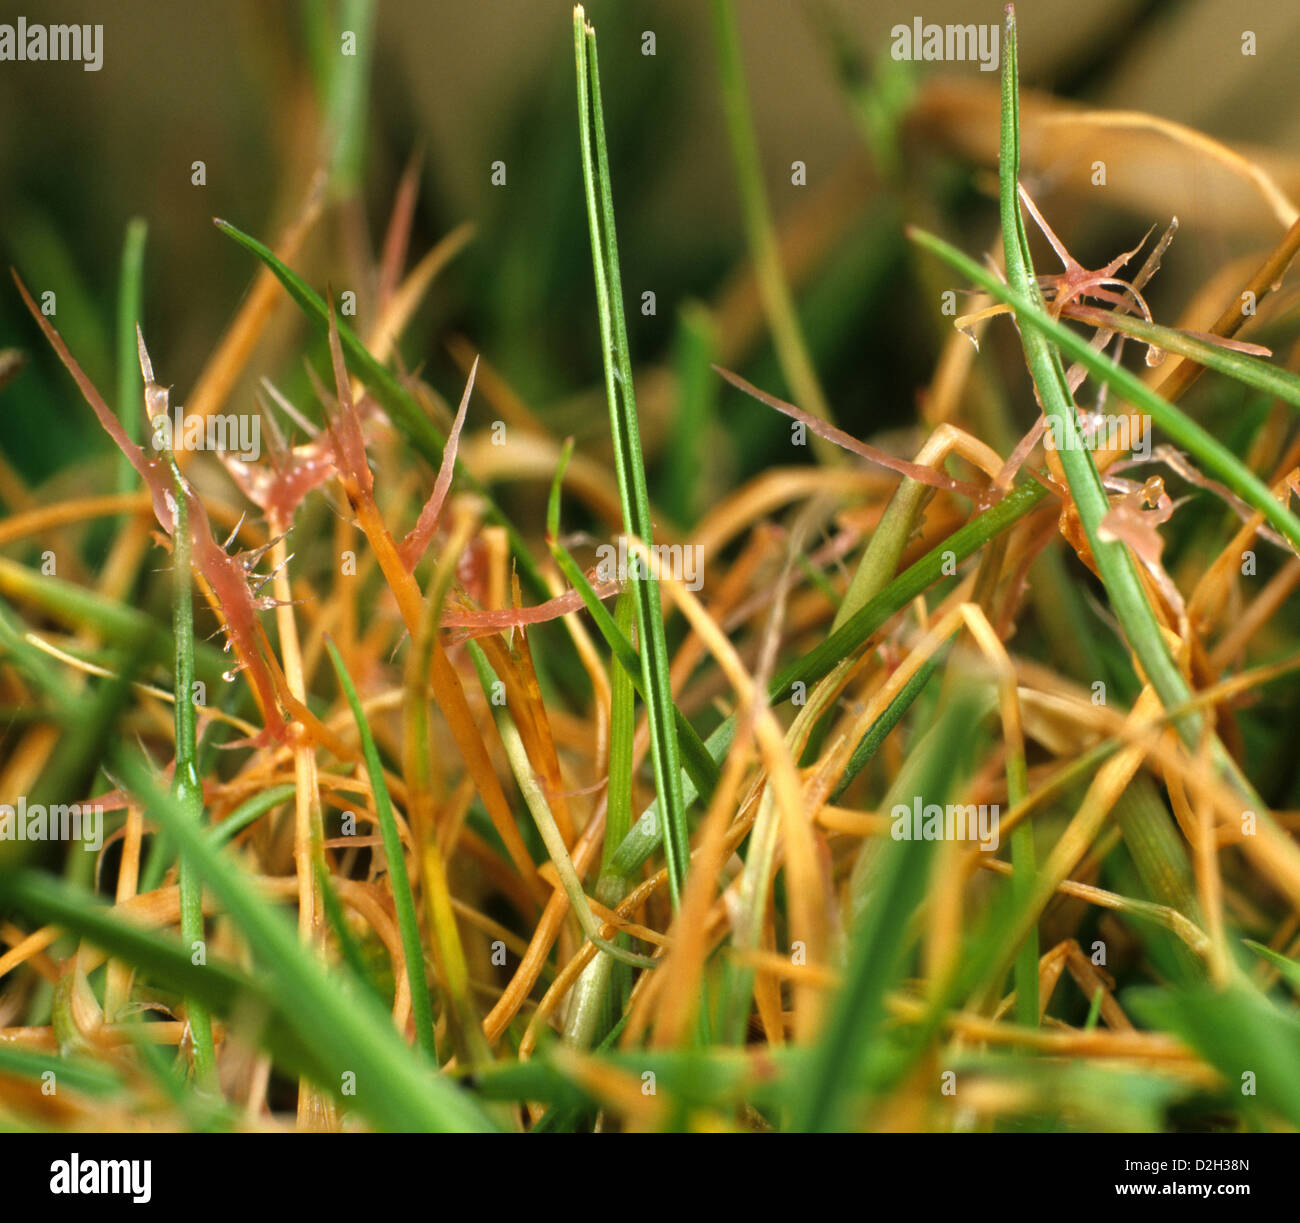 La pelouse avec fil rouge, Laetisaria fuciformis, fils ou fils de la maladie sur les feuilles Banque D'Images